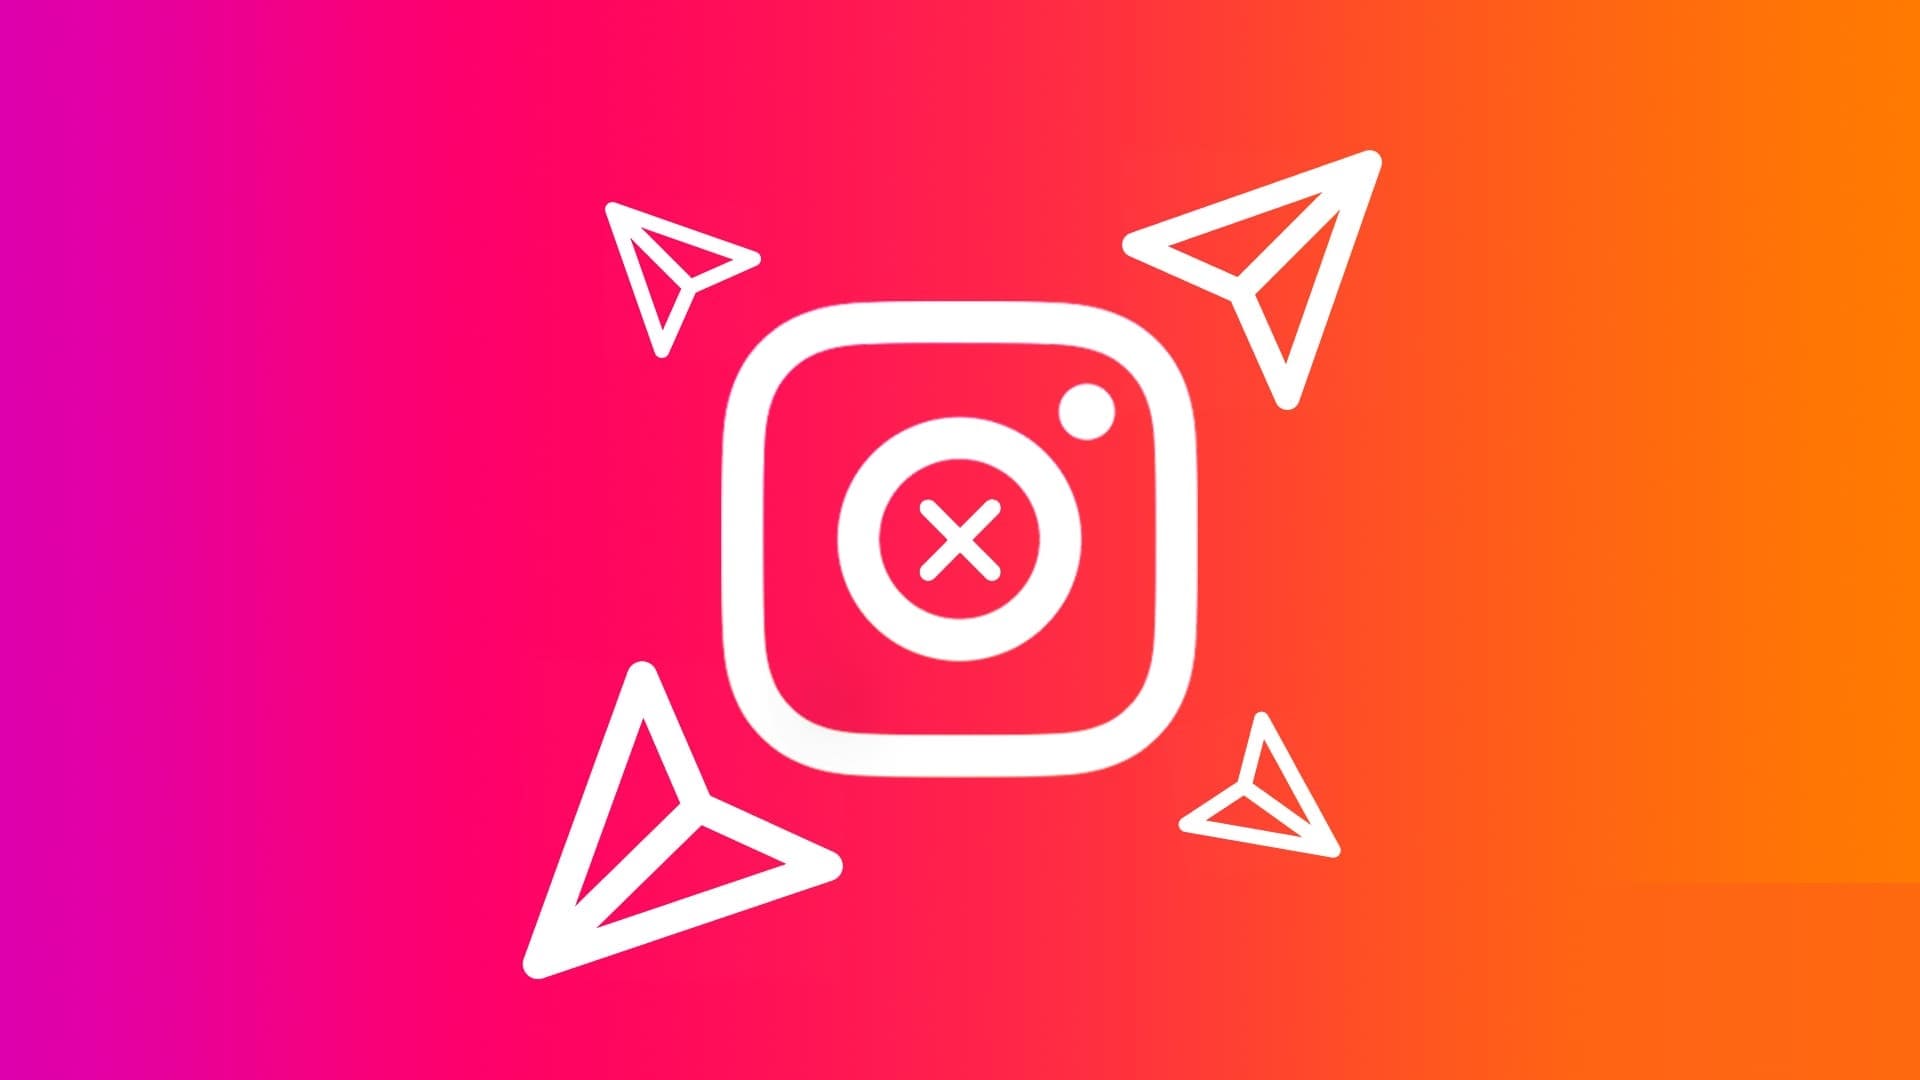 كيفية إيقاف تلقي الرسائل المباشرة على Instagram دون حظر - %categories